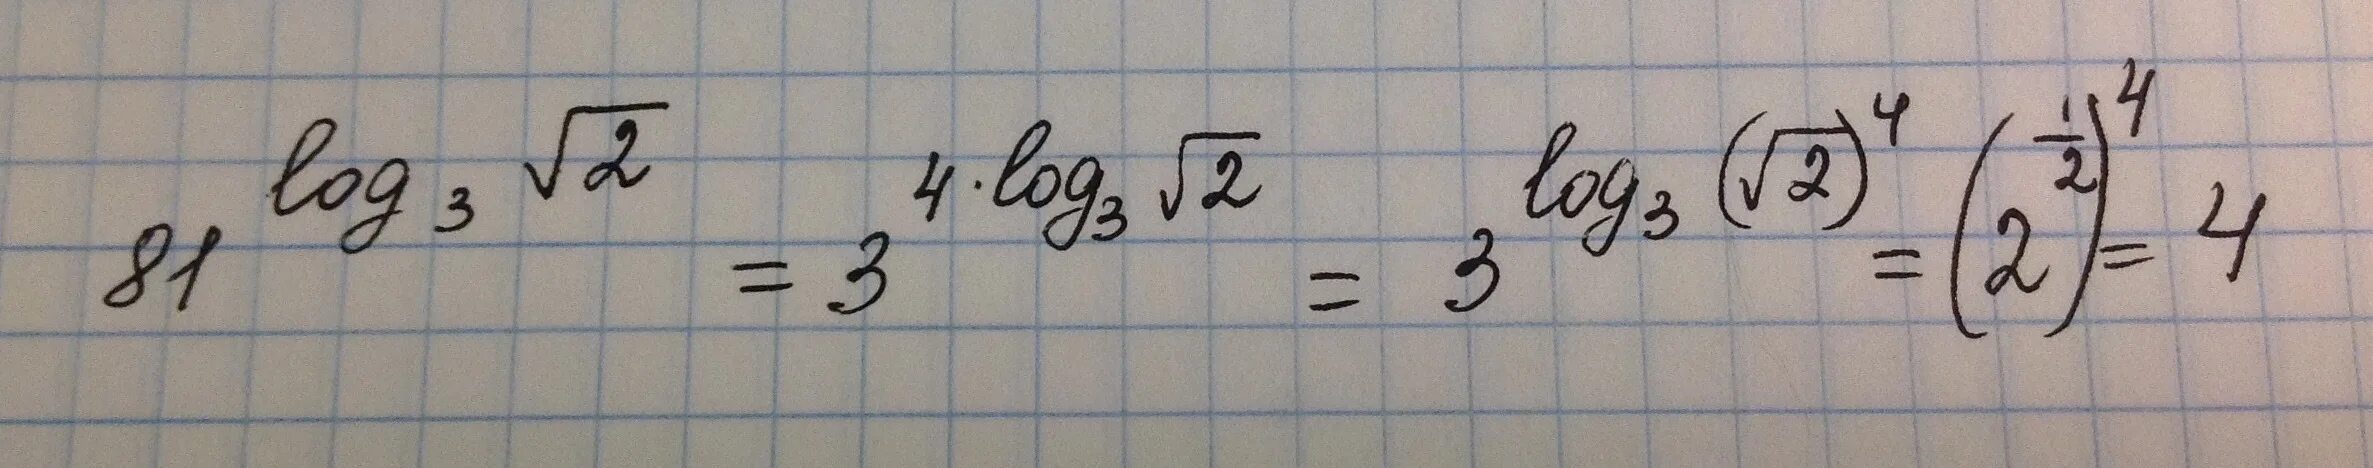 5 корень 81. Логарифм по основанию корень из 3. Логарифм по основанию корень из 2. Логарифм корень из 3 по основанию 2. Логарифм корня из трех по основанию три.